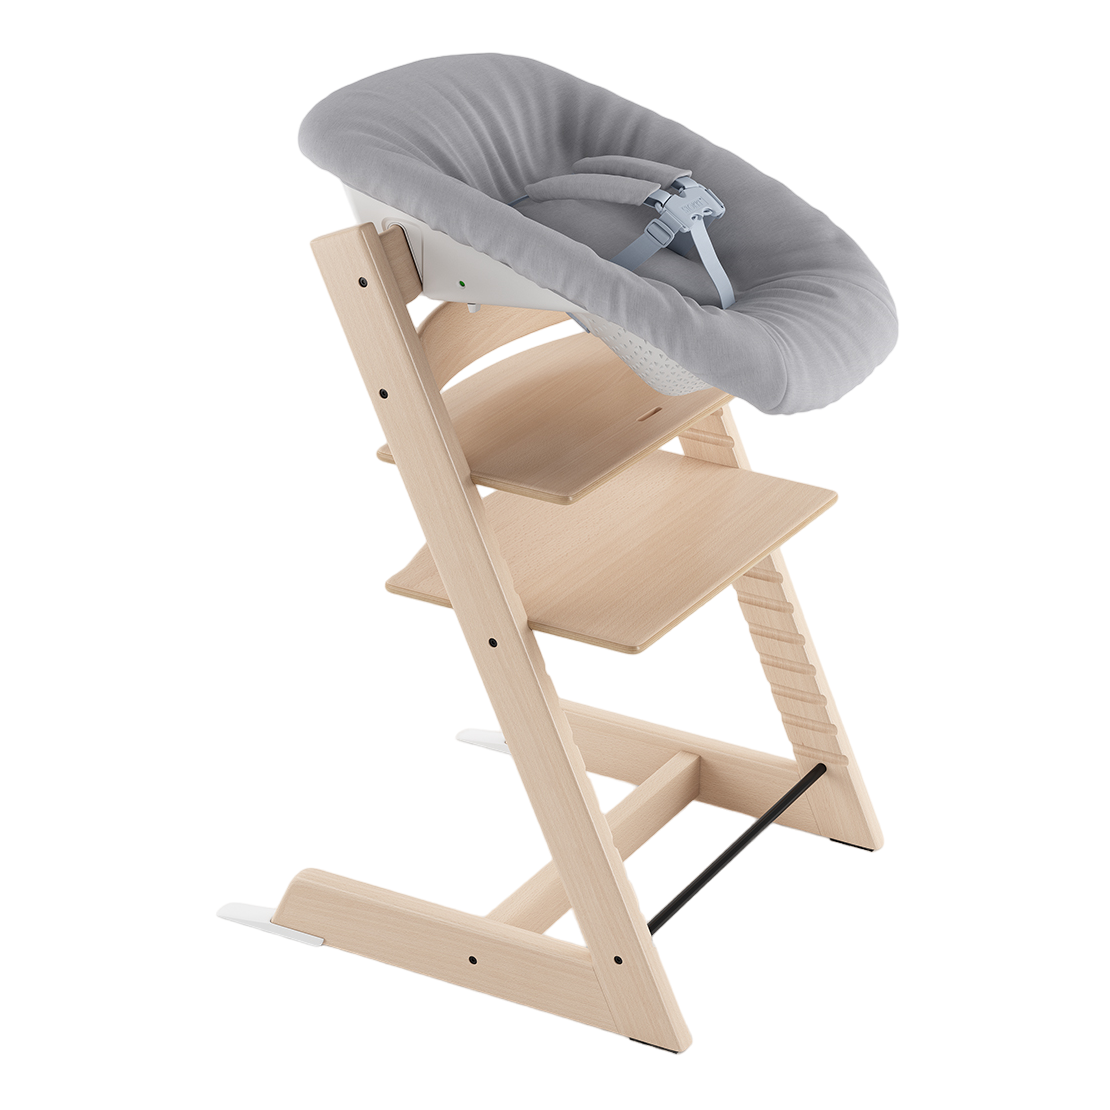 Набор Stokke Newborn Tripp Trapp Natural: стульчик и кресло для новорожденных (k.100101.52) - фото 1